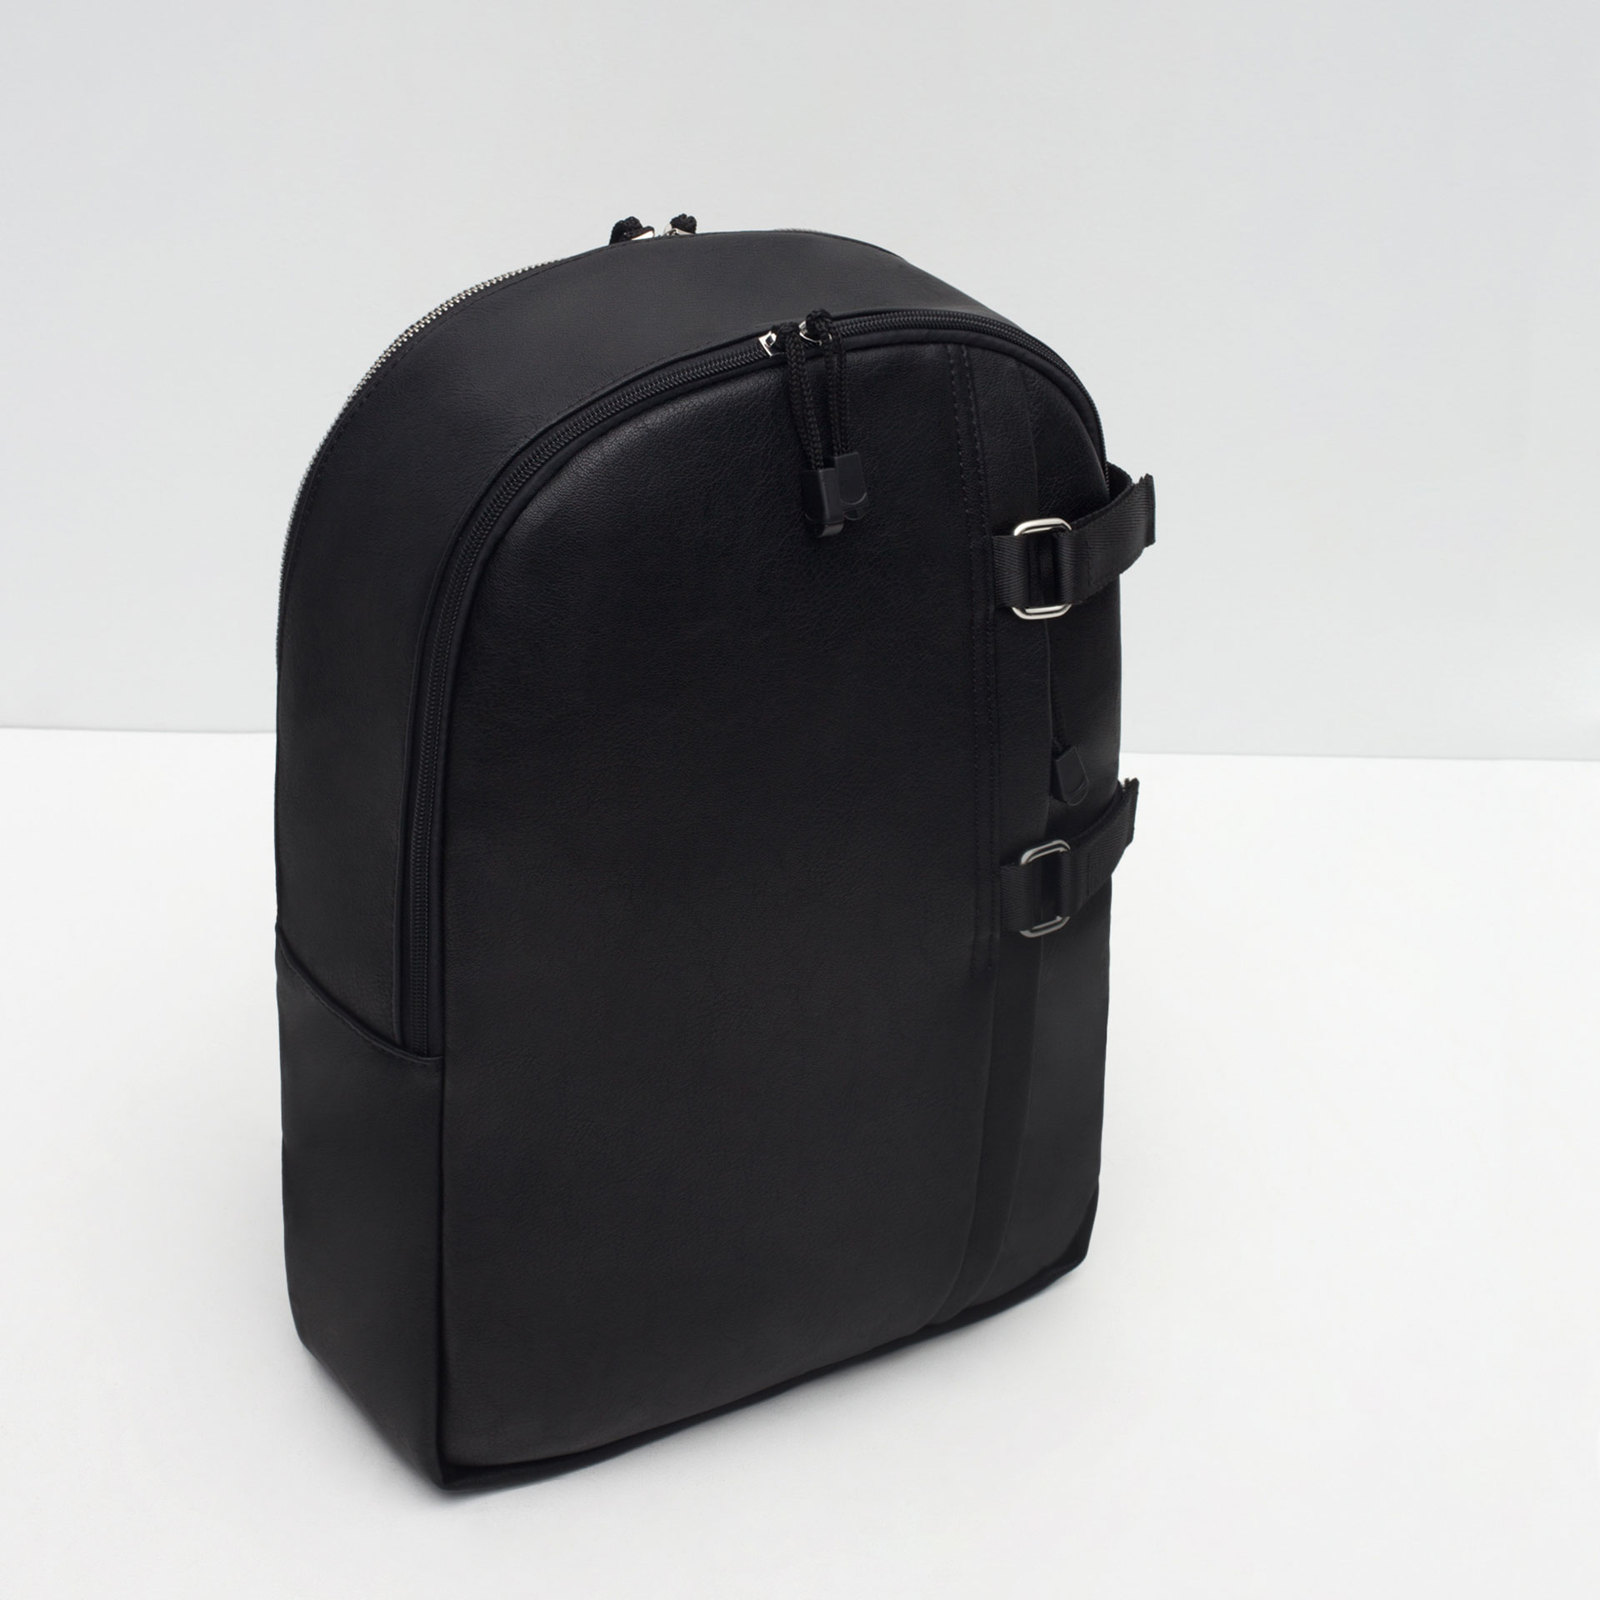 Zara fekete csatos hátizsák 2015.10.16 fotója